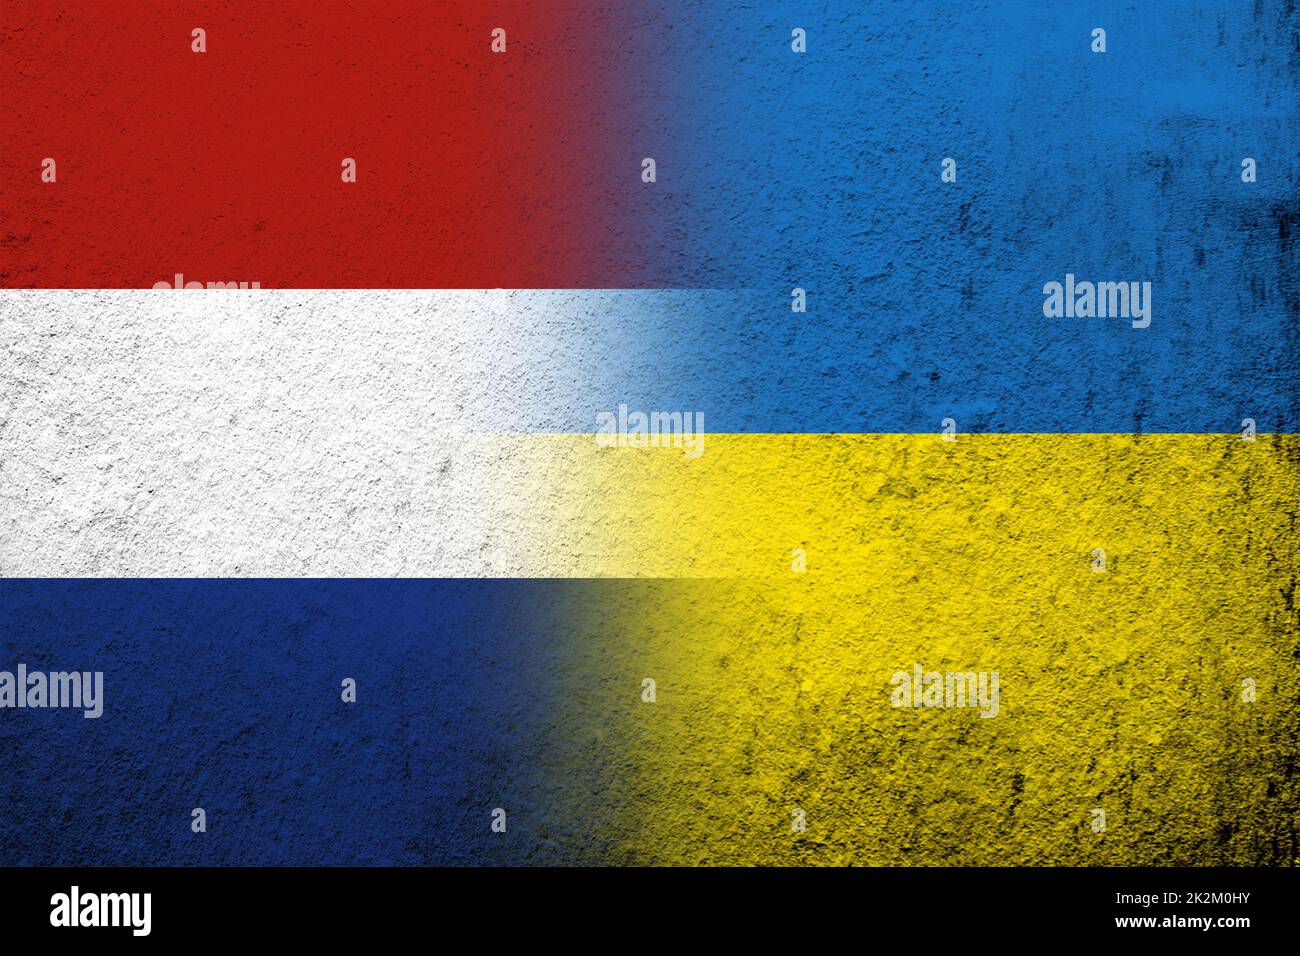 Le Royaume des pays-Bas drapeau national avec drapeau national de l'Ukraine. Grunge l'arrière-plan Banque D'Images